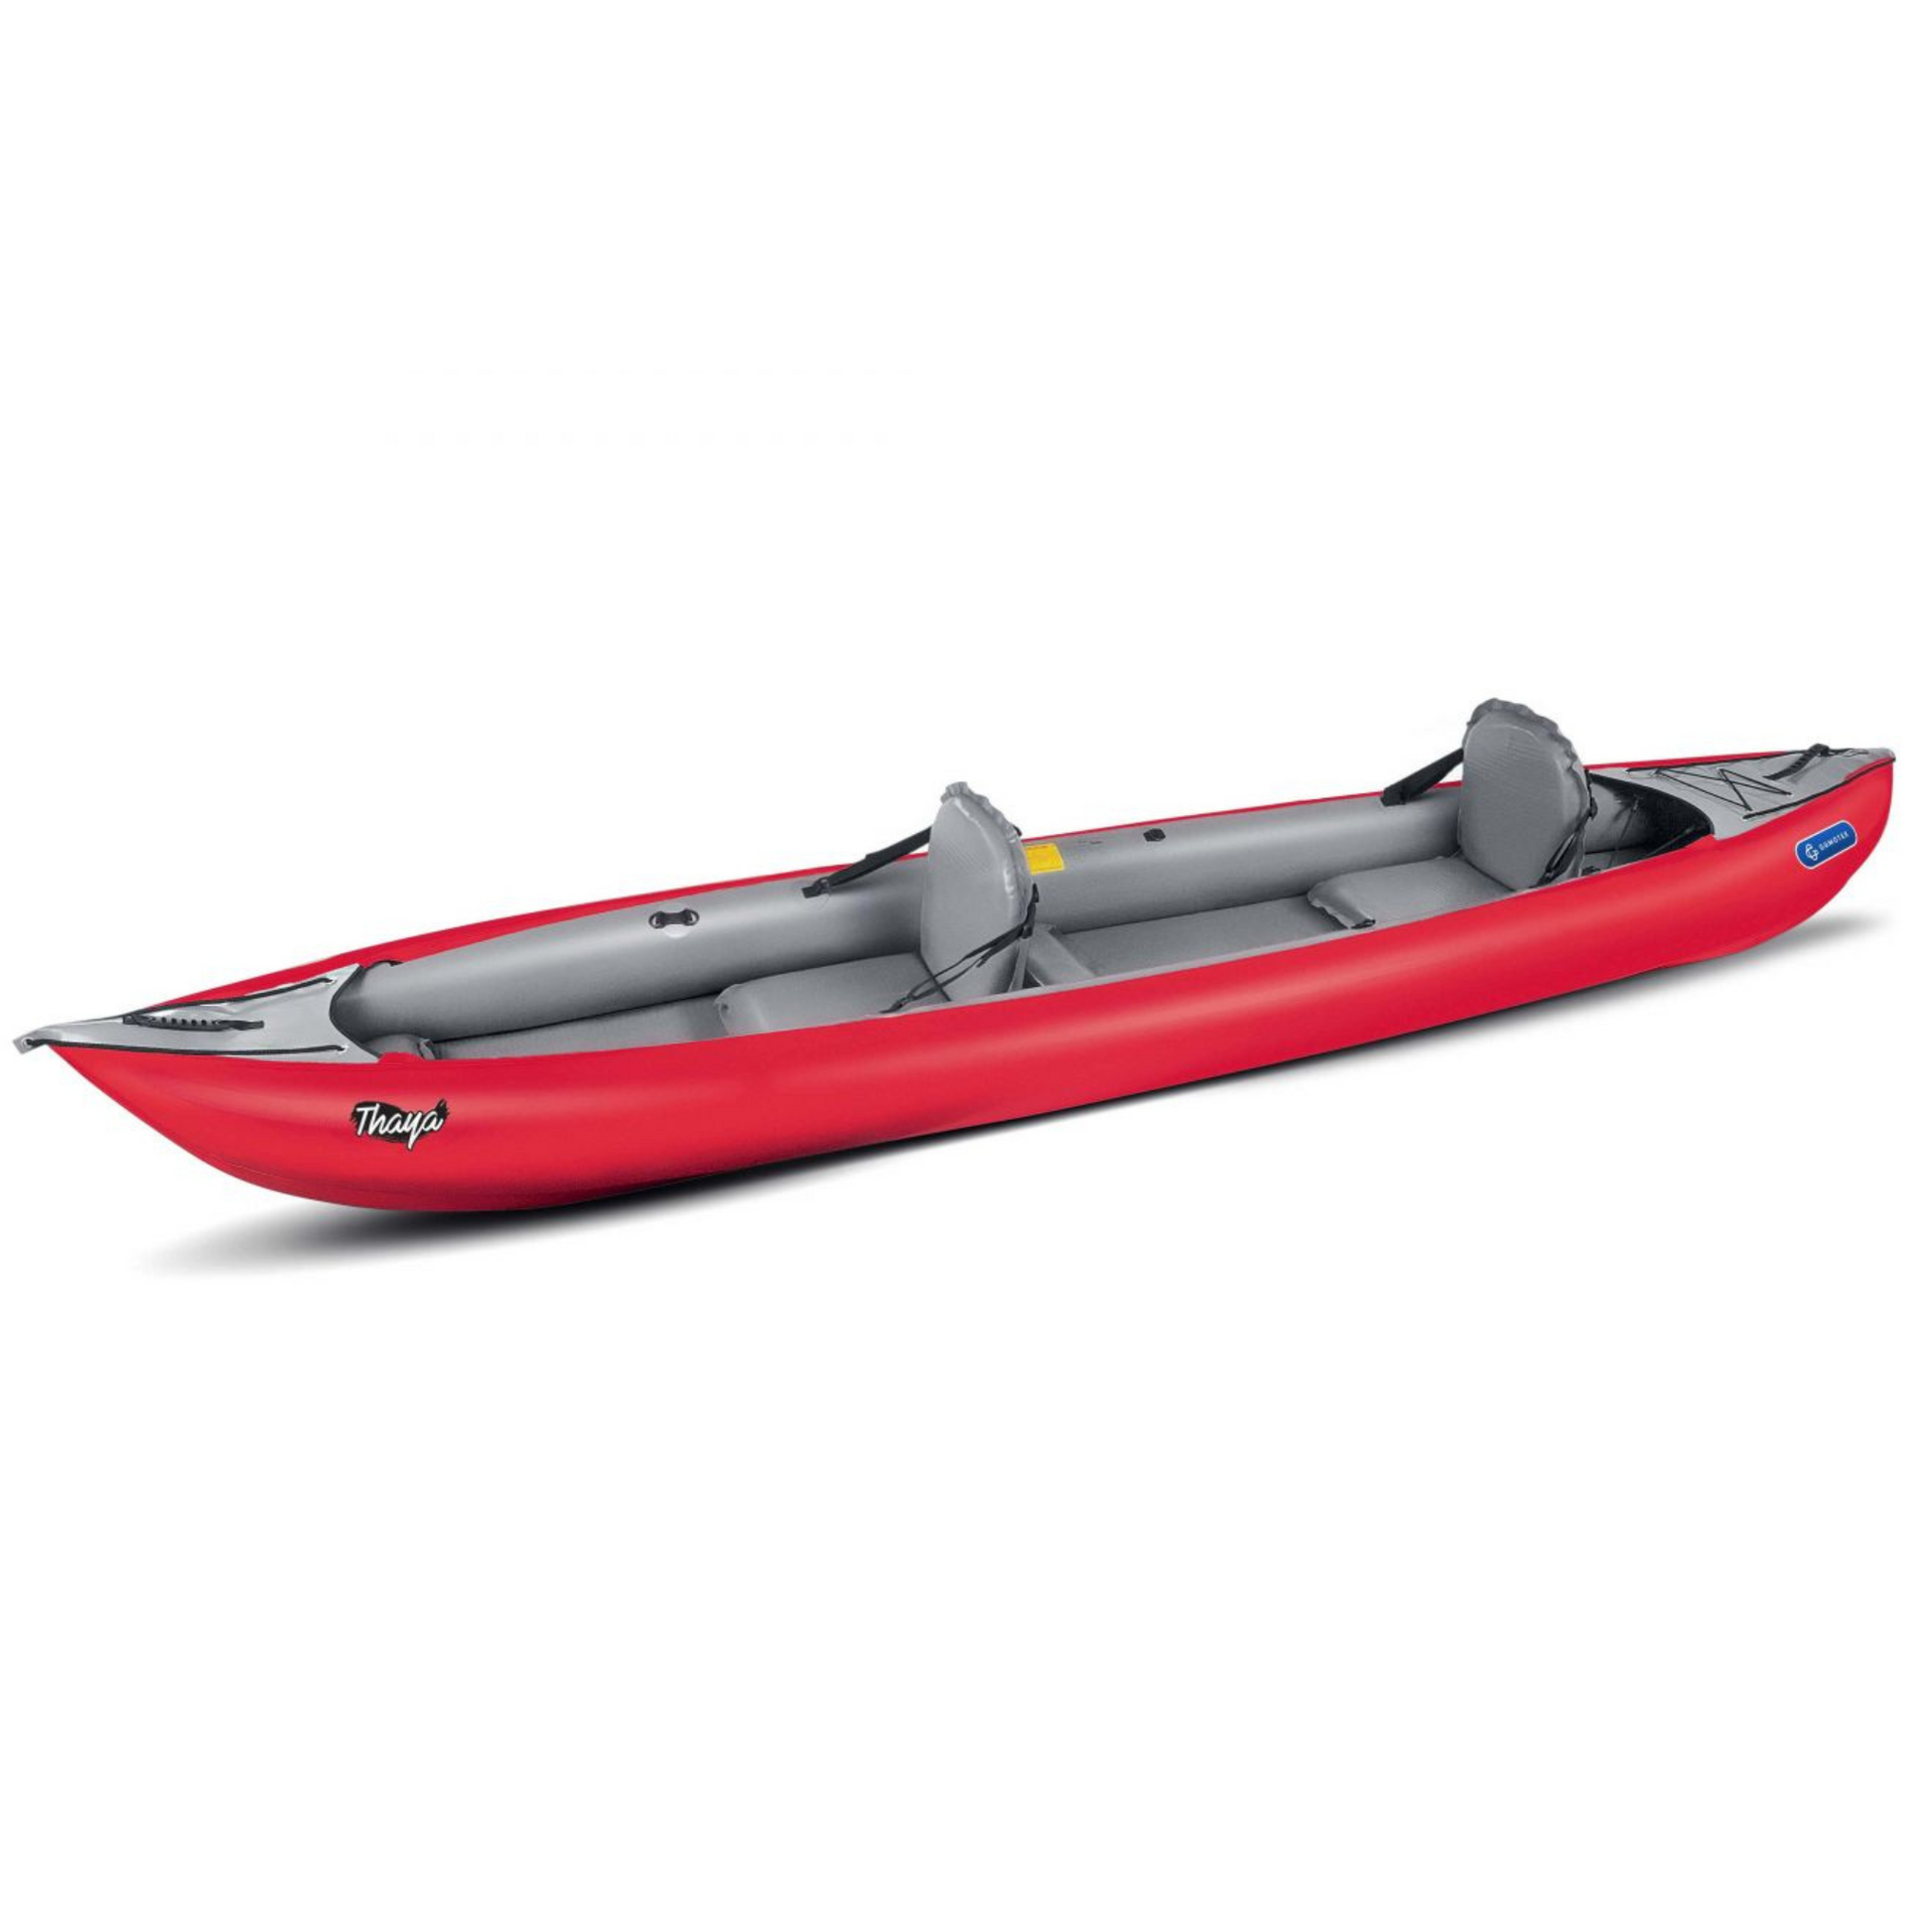 Innova Kayak's First Inflatable Fishing Kayak